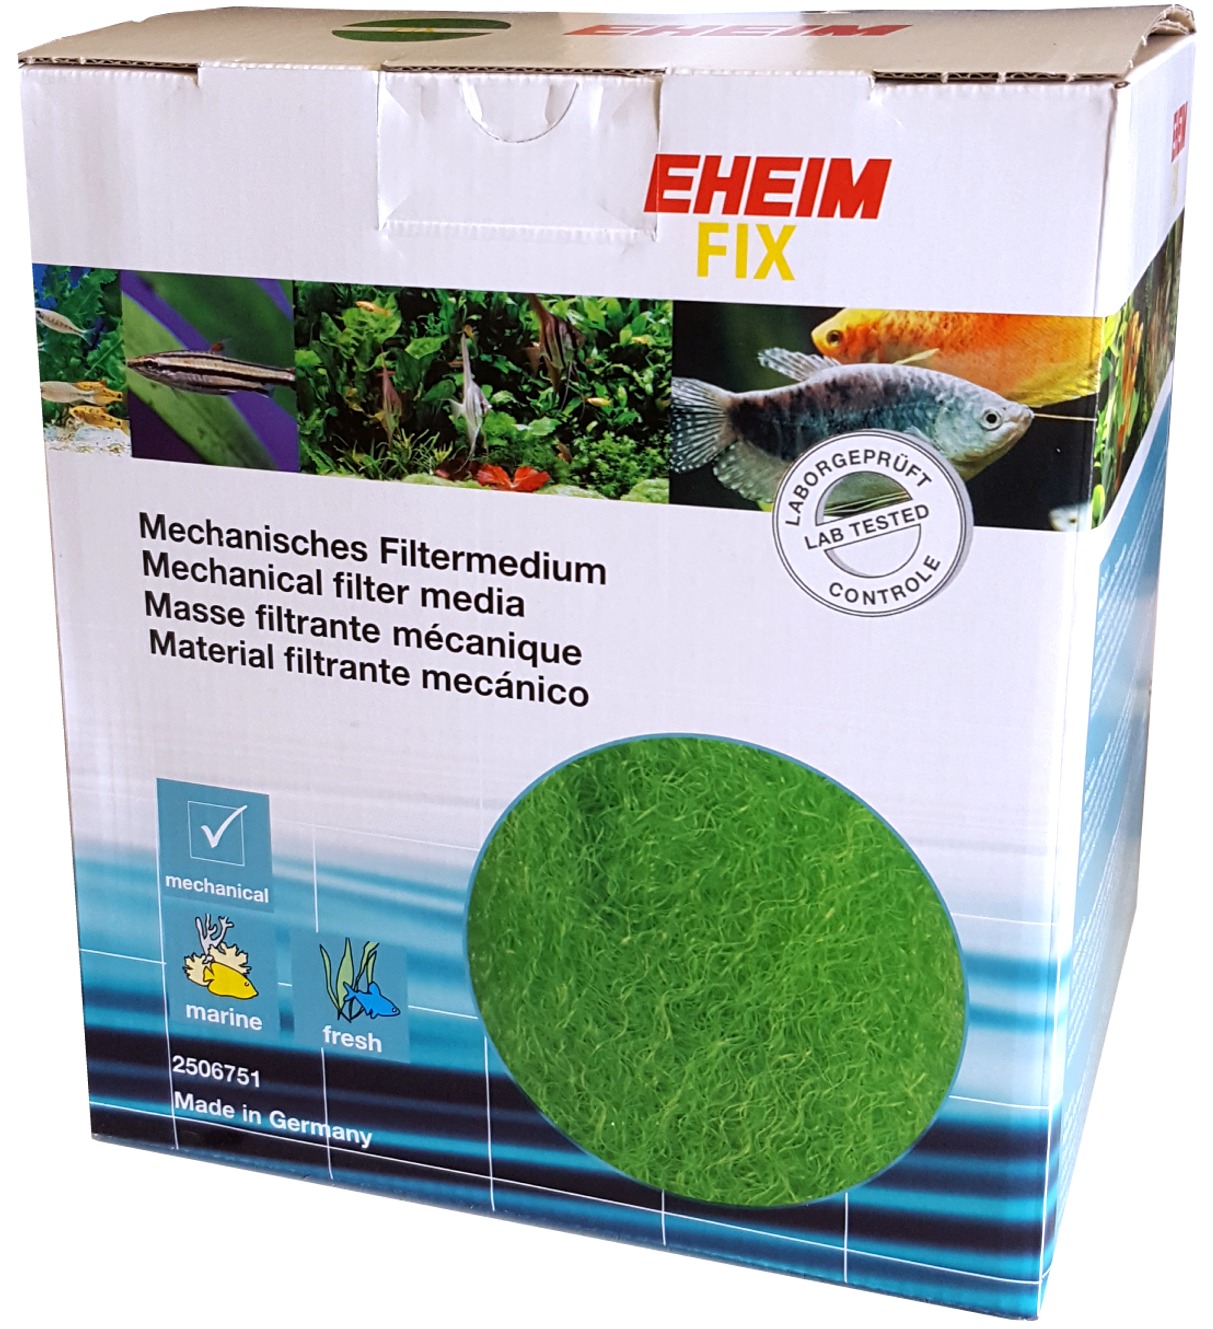 EHEIM Fix 5L materiau à structure spéciale pour filtration mécanique